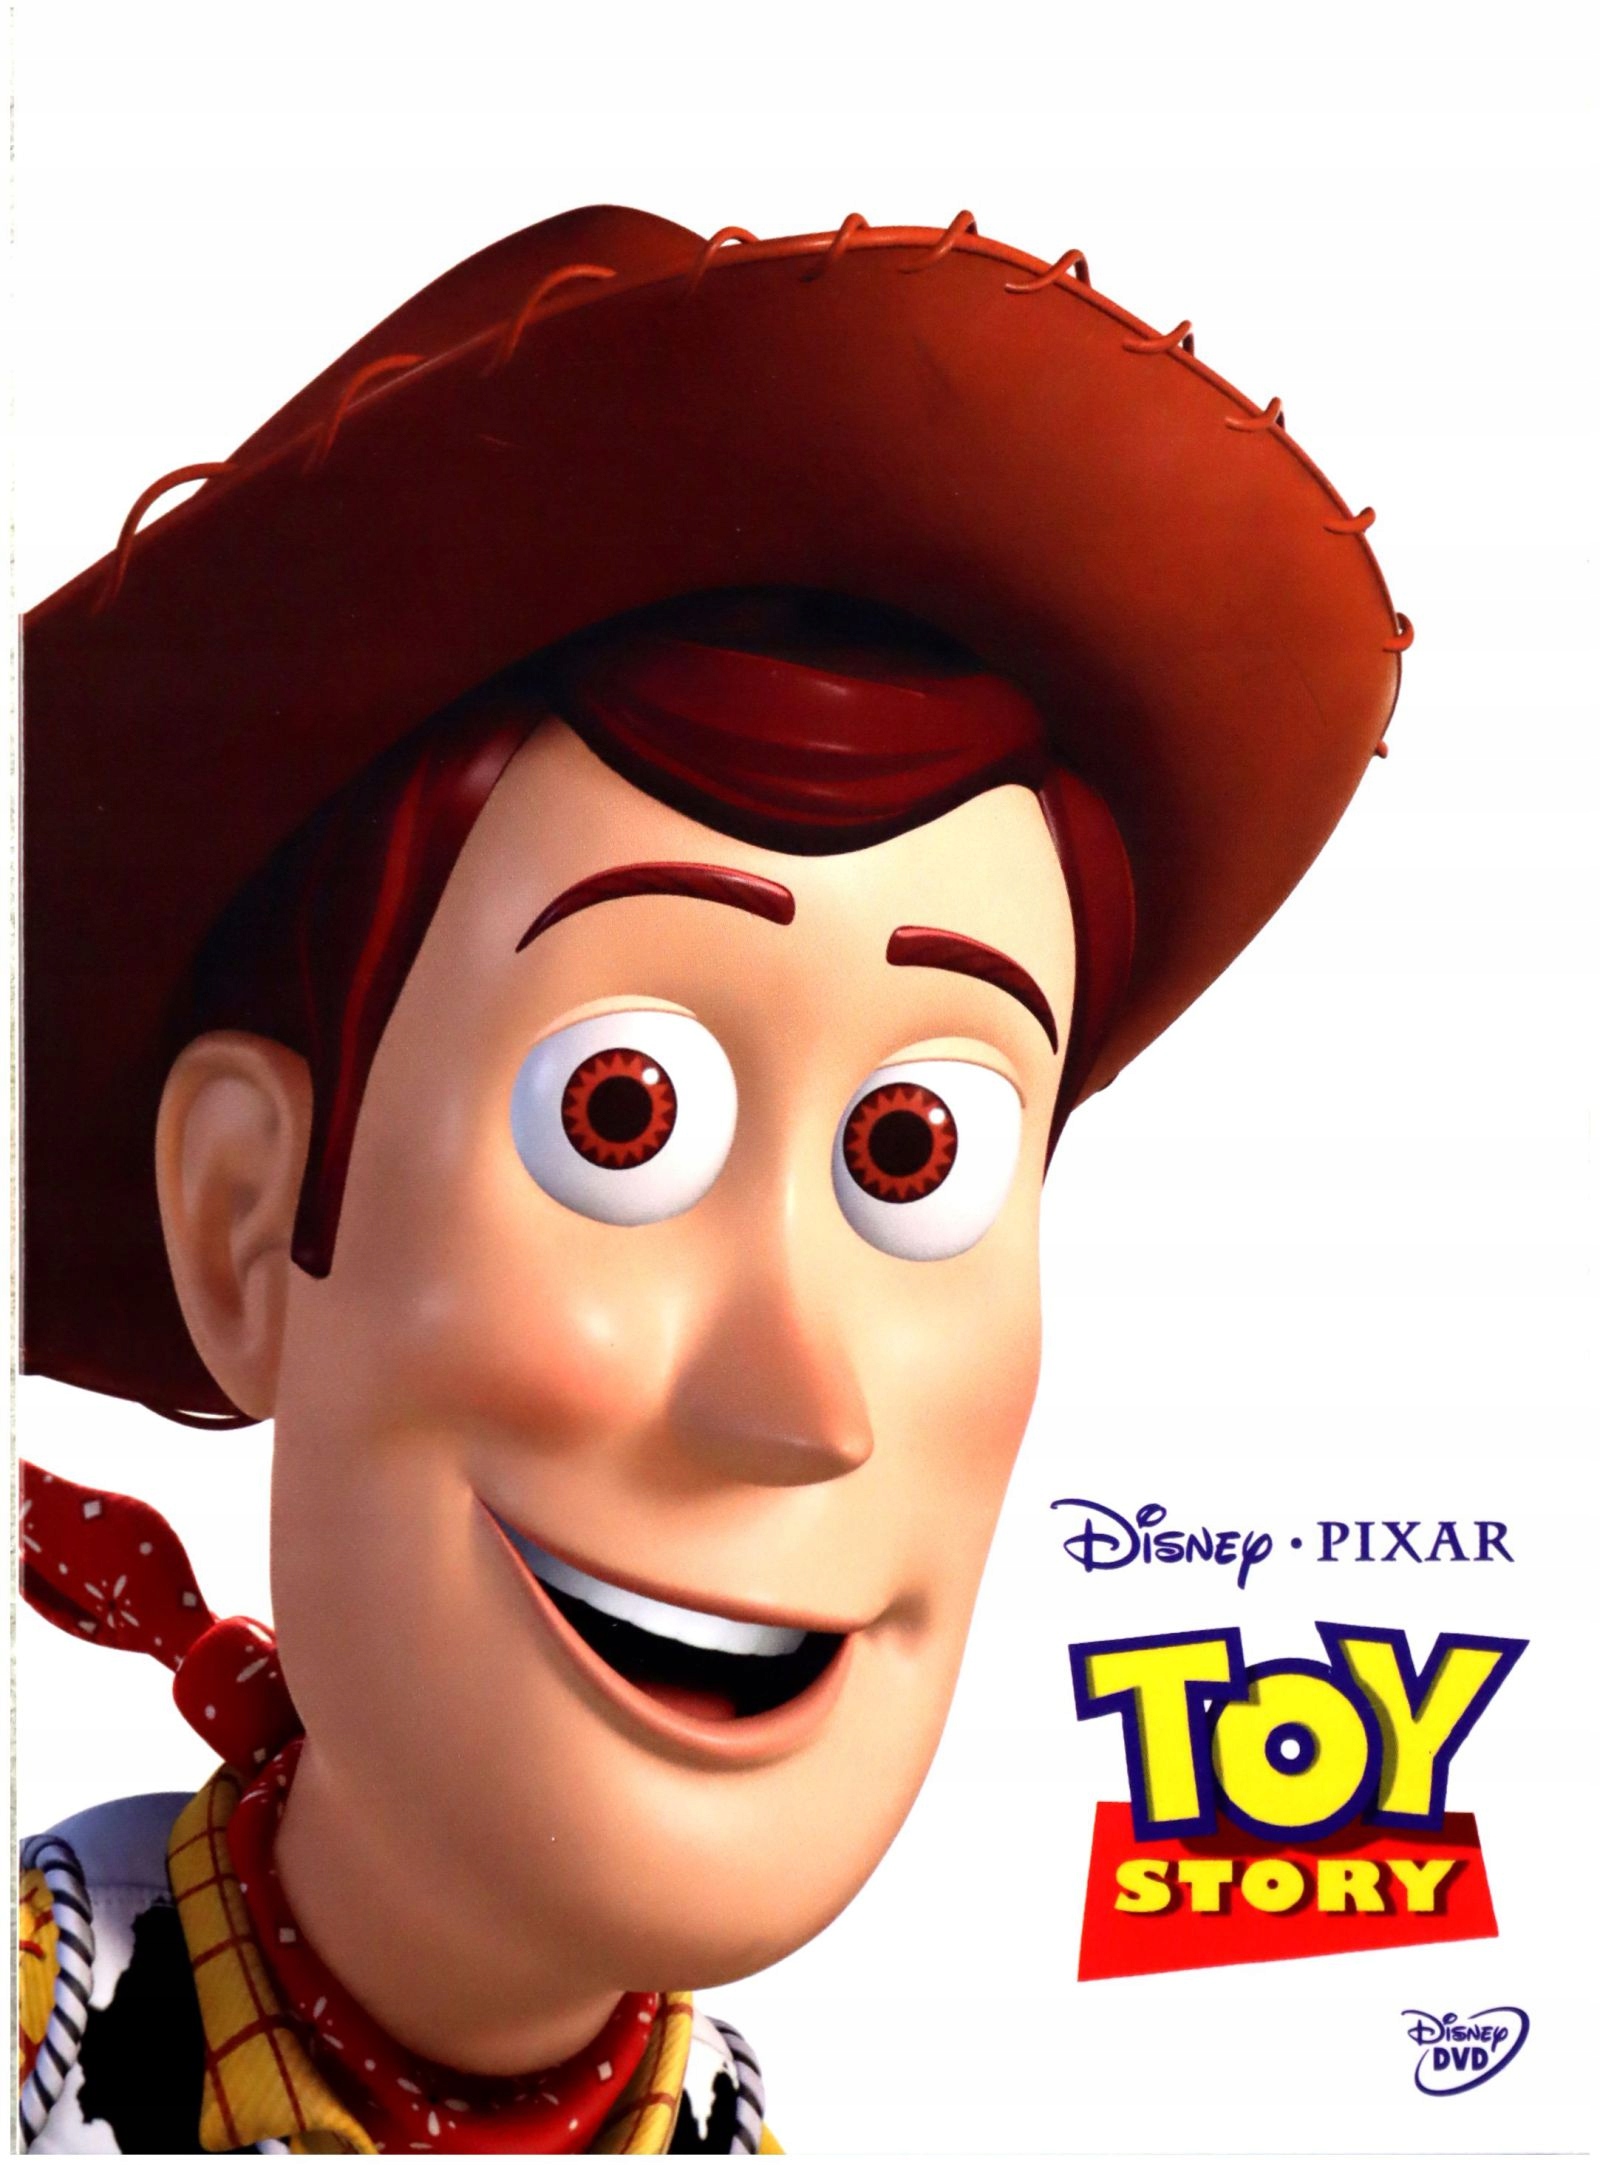 История игрушек дисней. Дисней Пиксар история игрушек 1995. DVD Disney Pixar история игрушек. Toy story 2 1995 Blu ray. Toy story 1995 Blu ray.